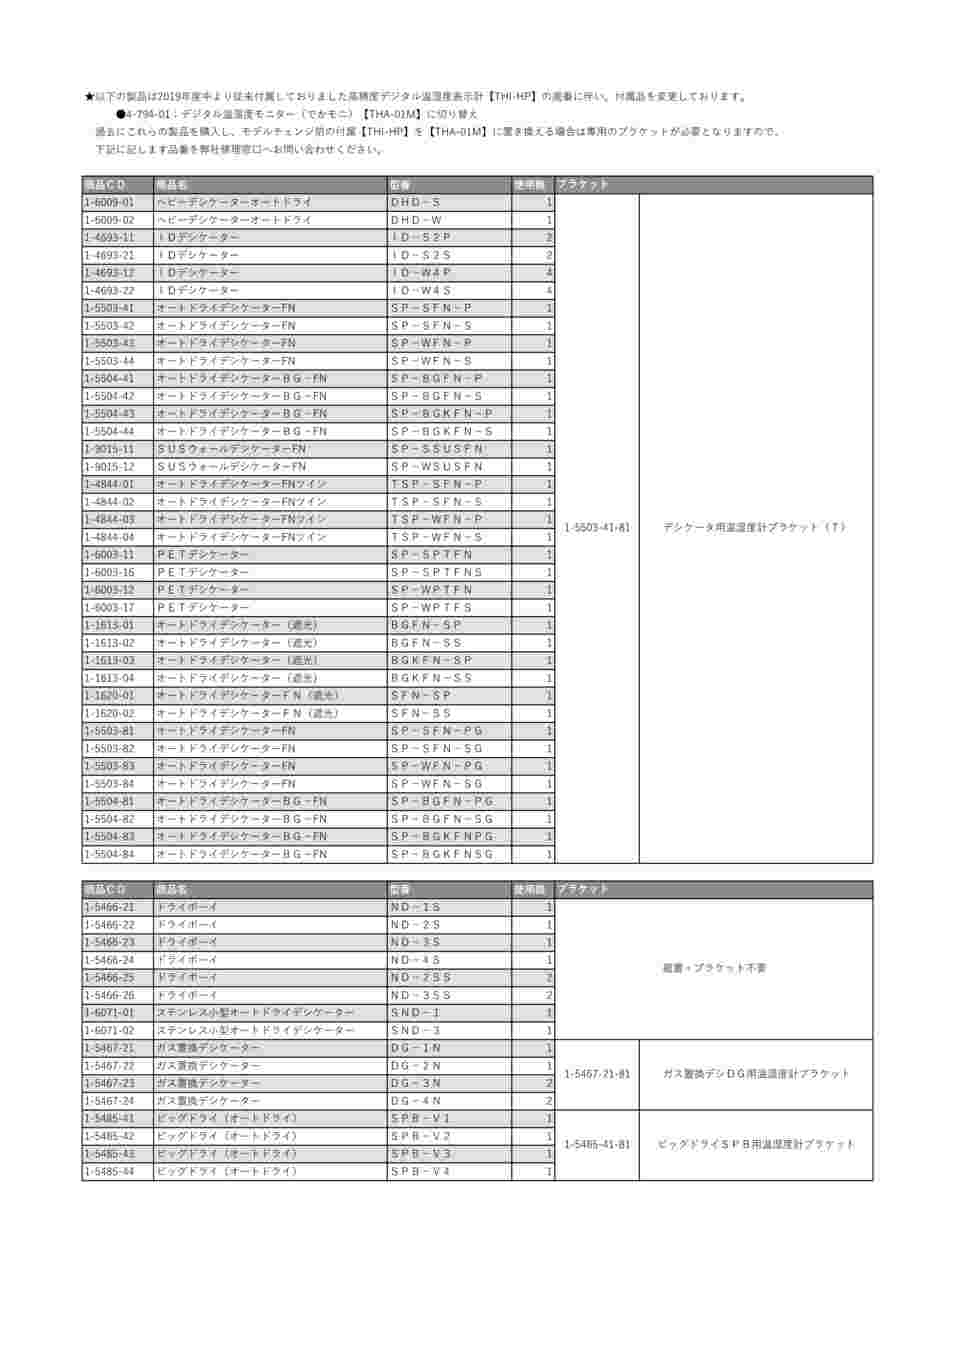 1-5467-22 ガス置換デシケーター DG-2N 【AXEL】 アズワン